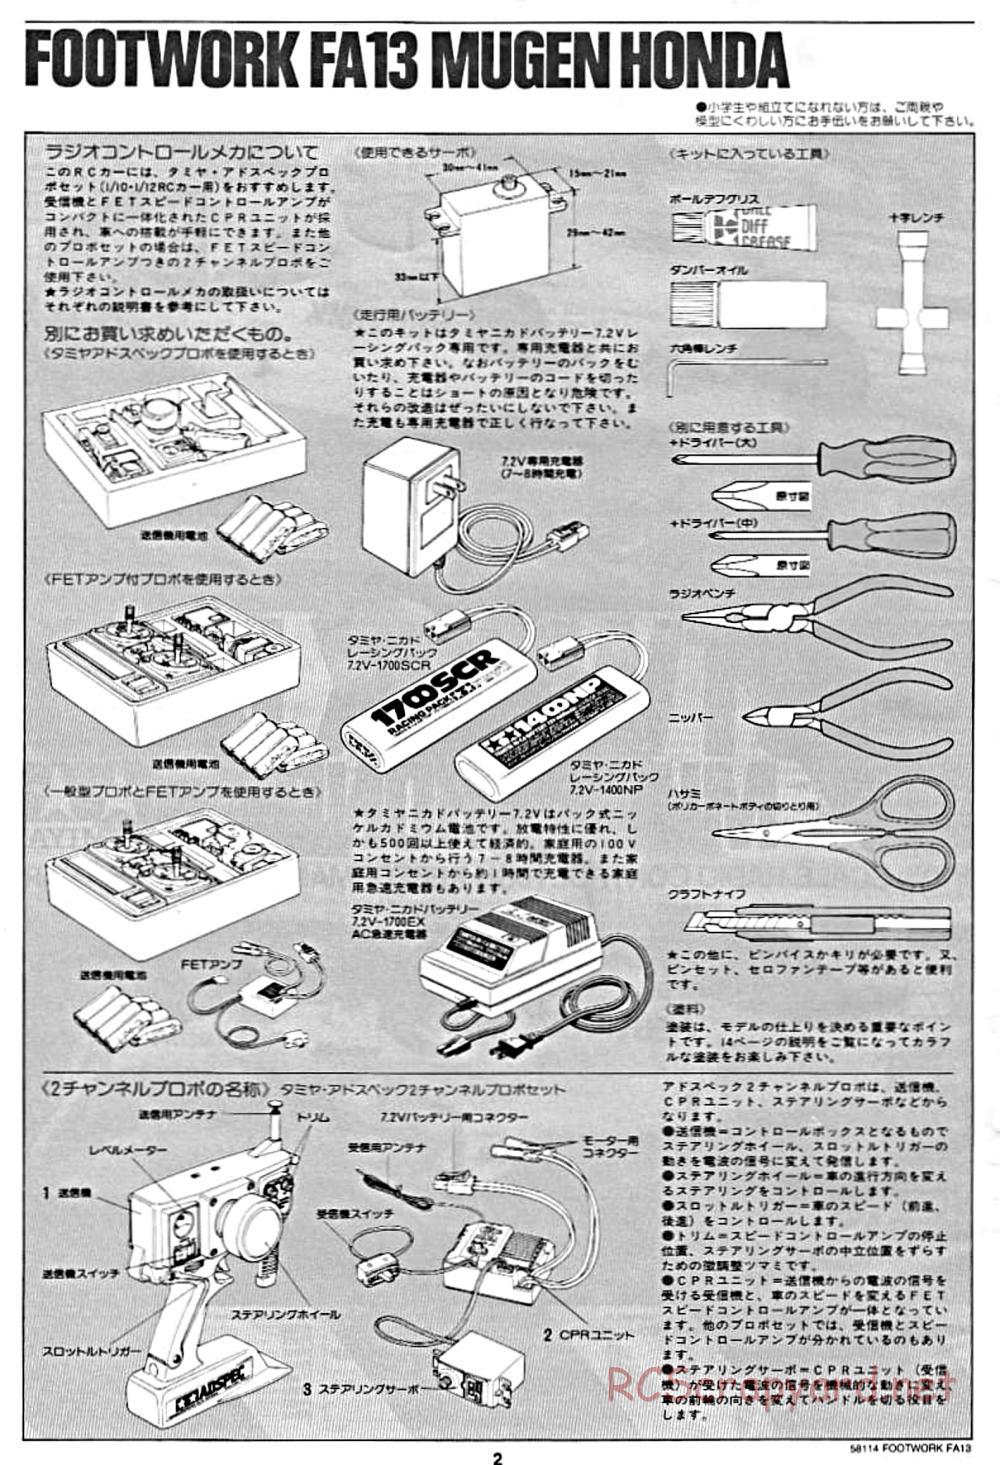 Tamiya - Footwork FA13 Mugen Honda - F102 Chassis - Manual - Page 2